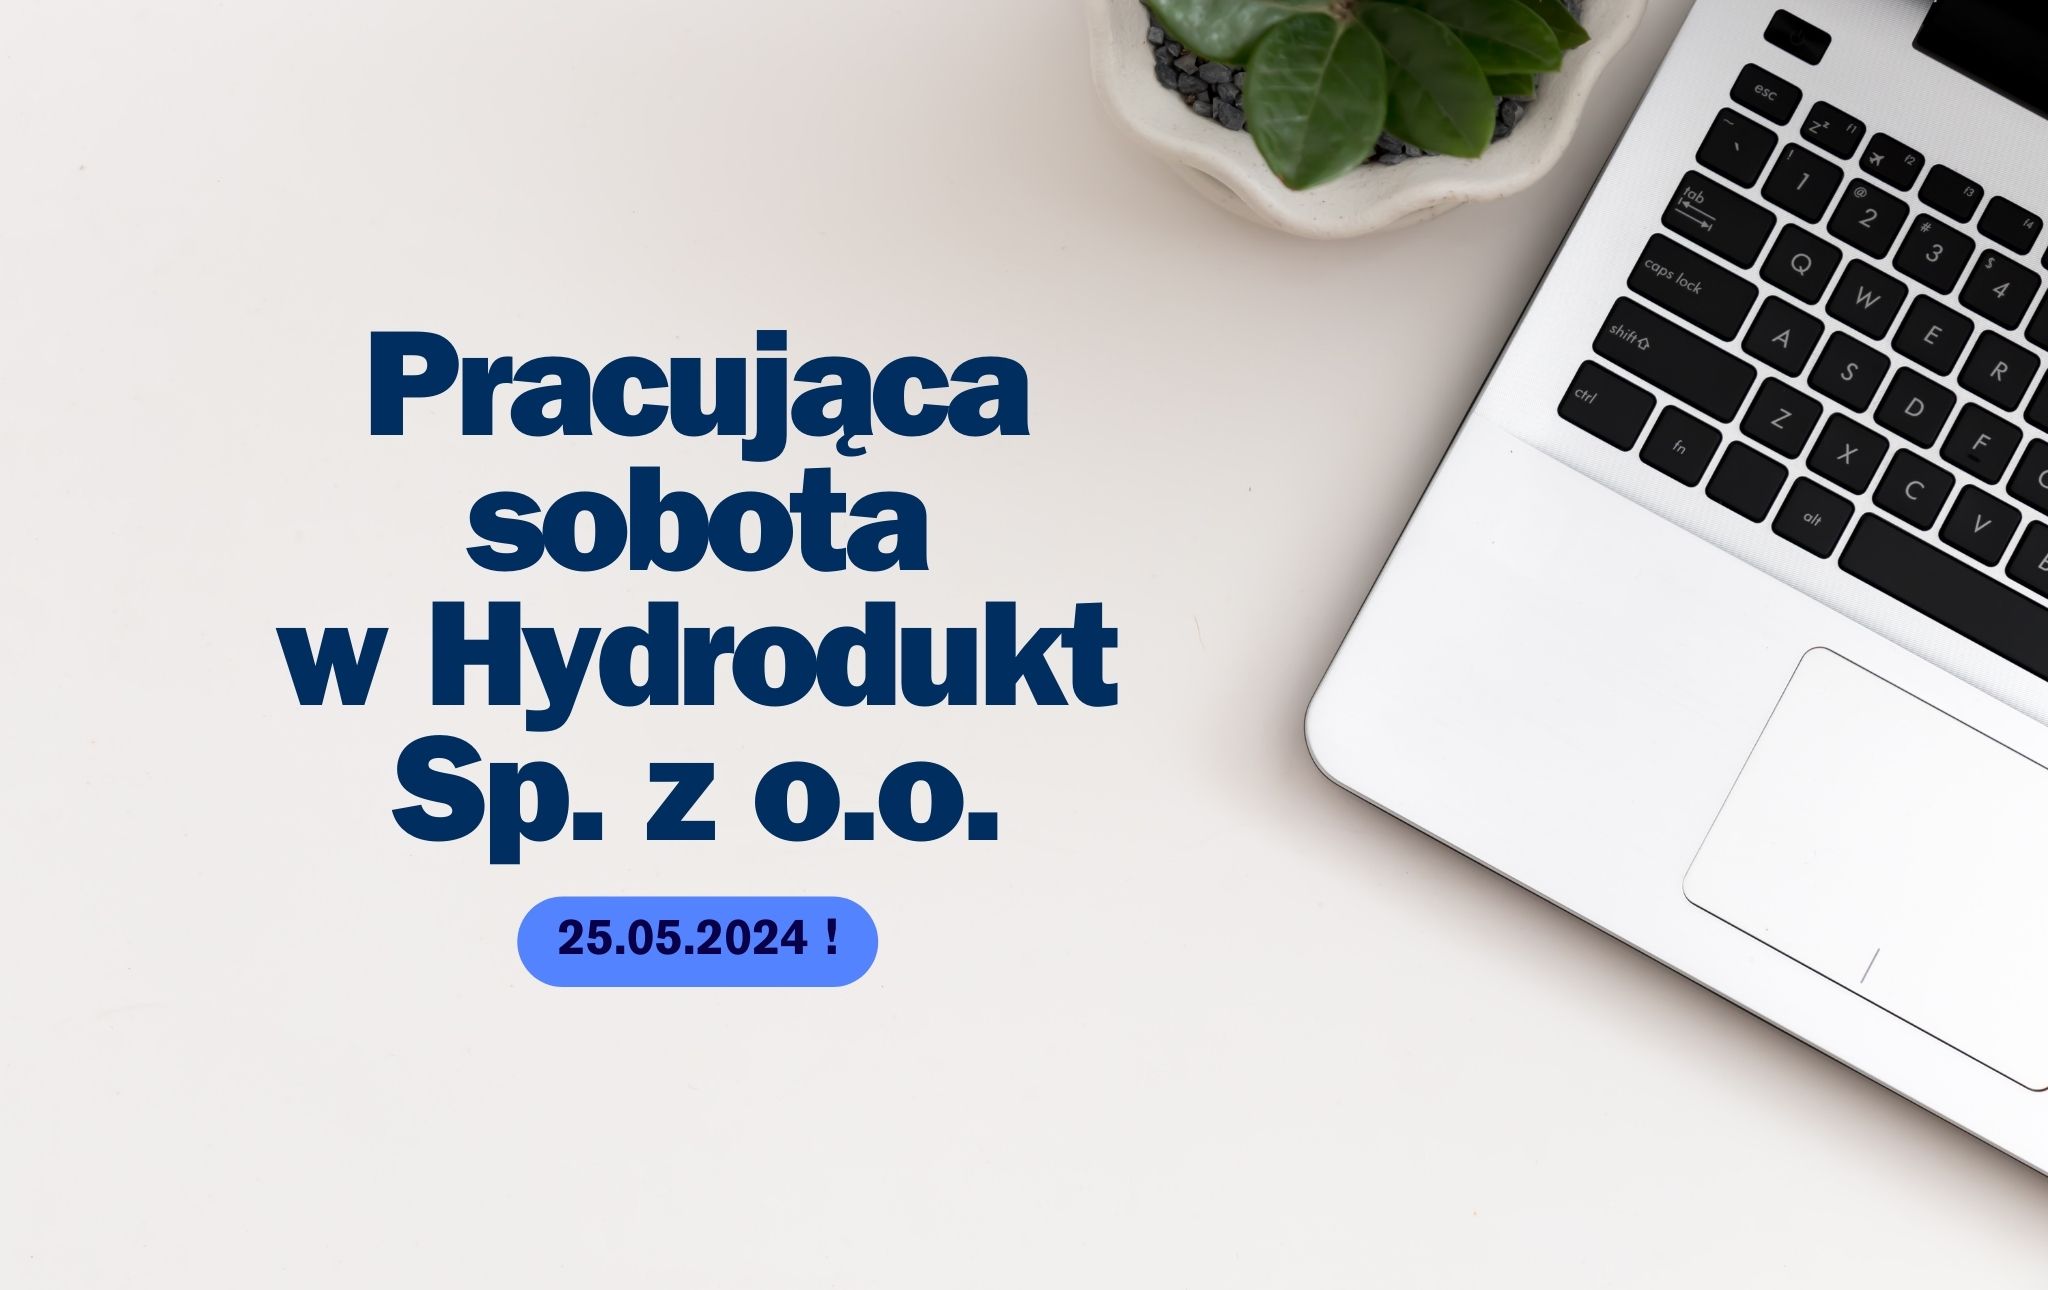 Na zdjeciu widnieje napis : Pracująca sobota w Hydrodukt Sp. z o.o. , w tle widać część laptopa.